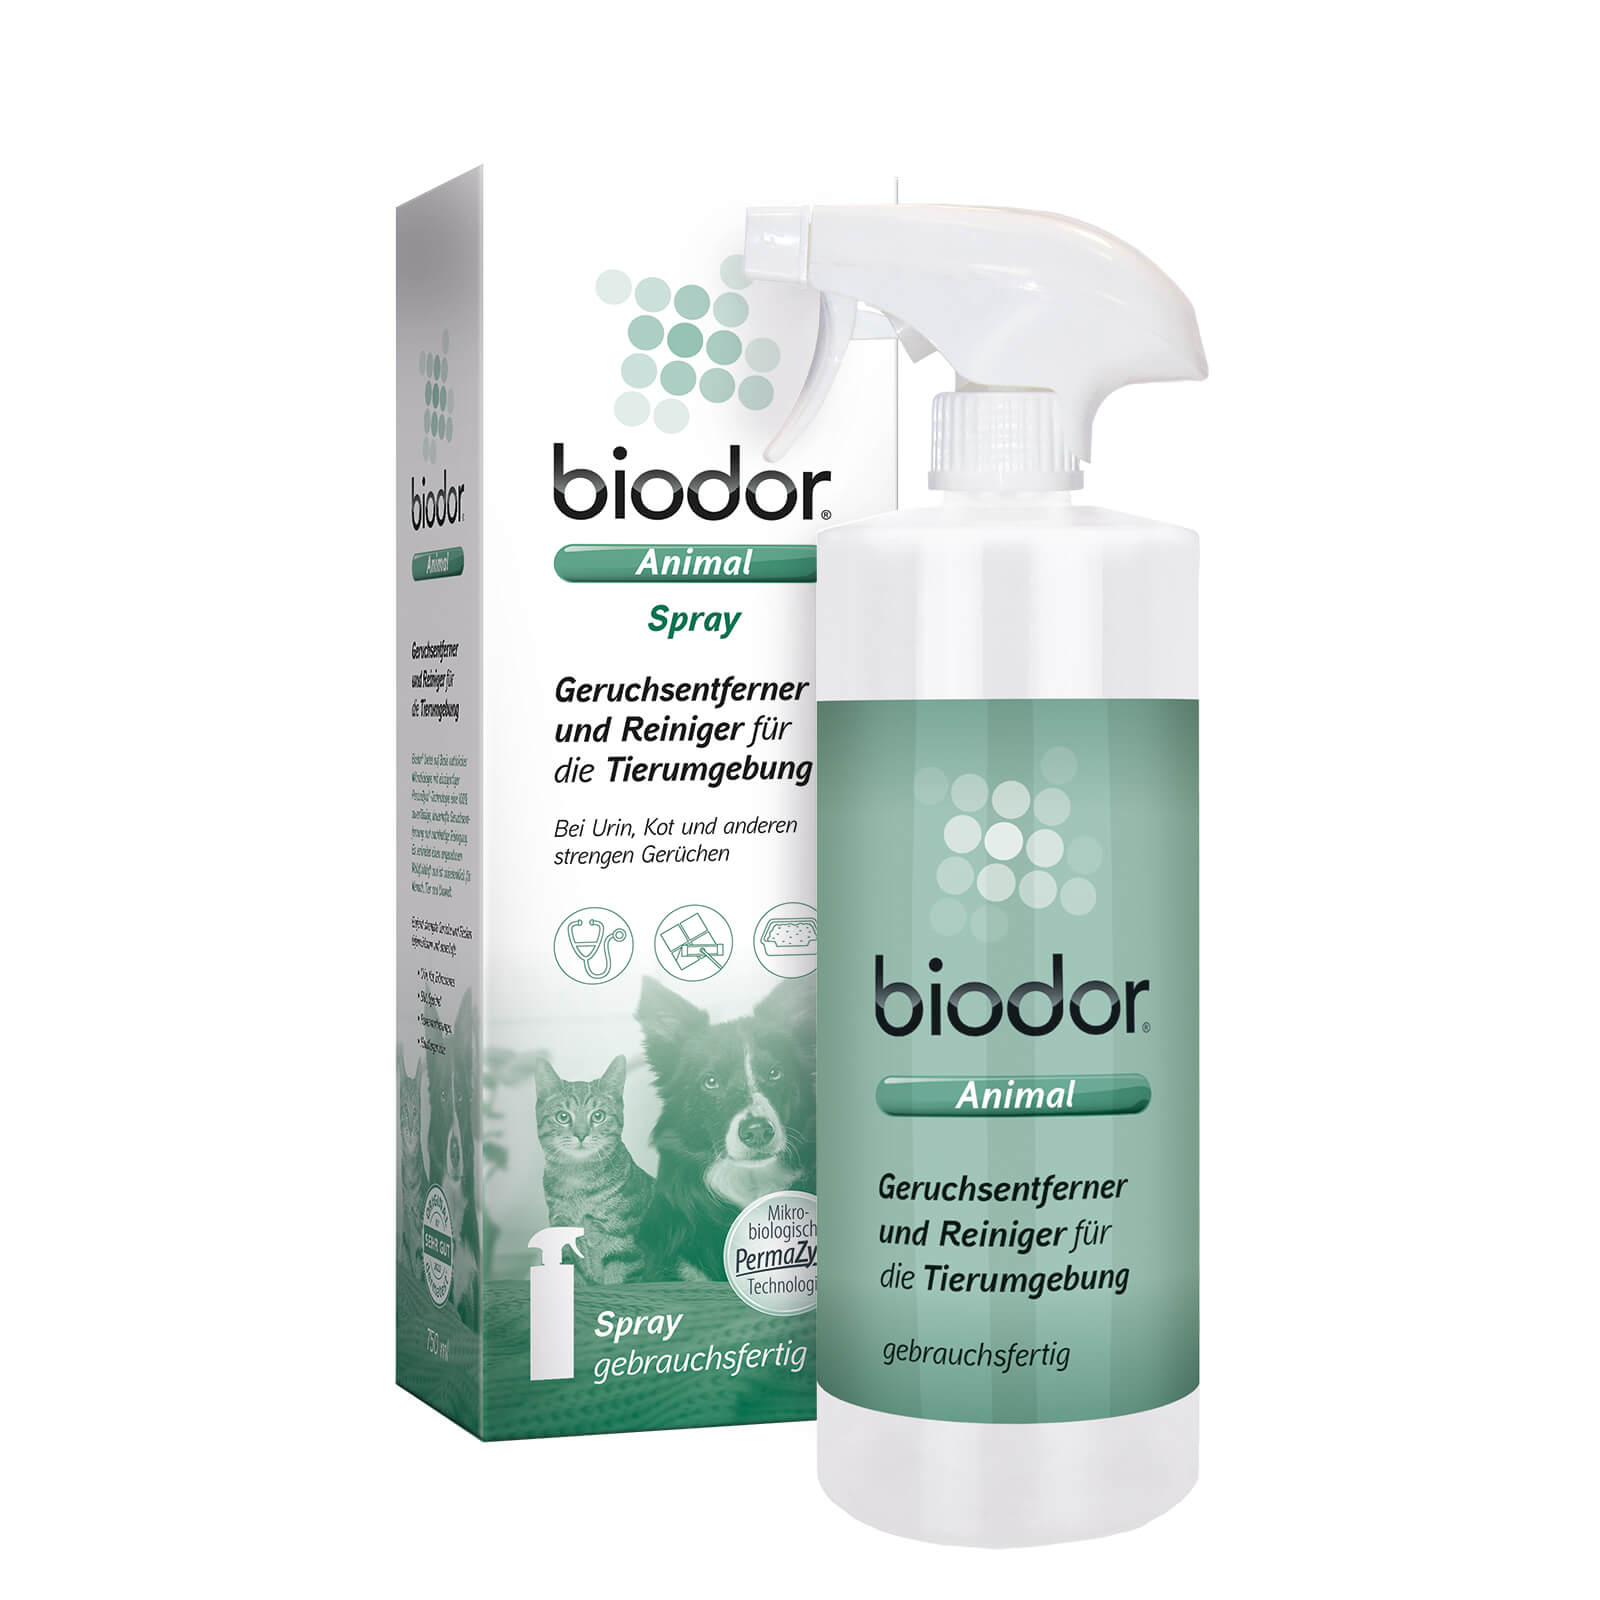 Biodor Animal Spray  Geruchsentferner & Reiniger – Biodor GmbH